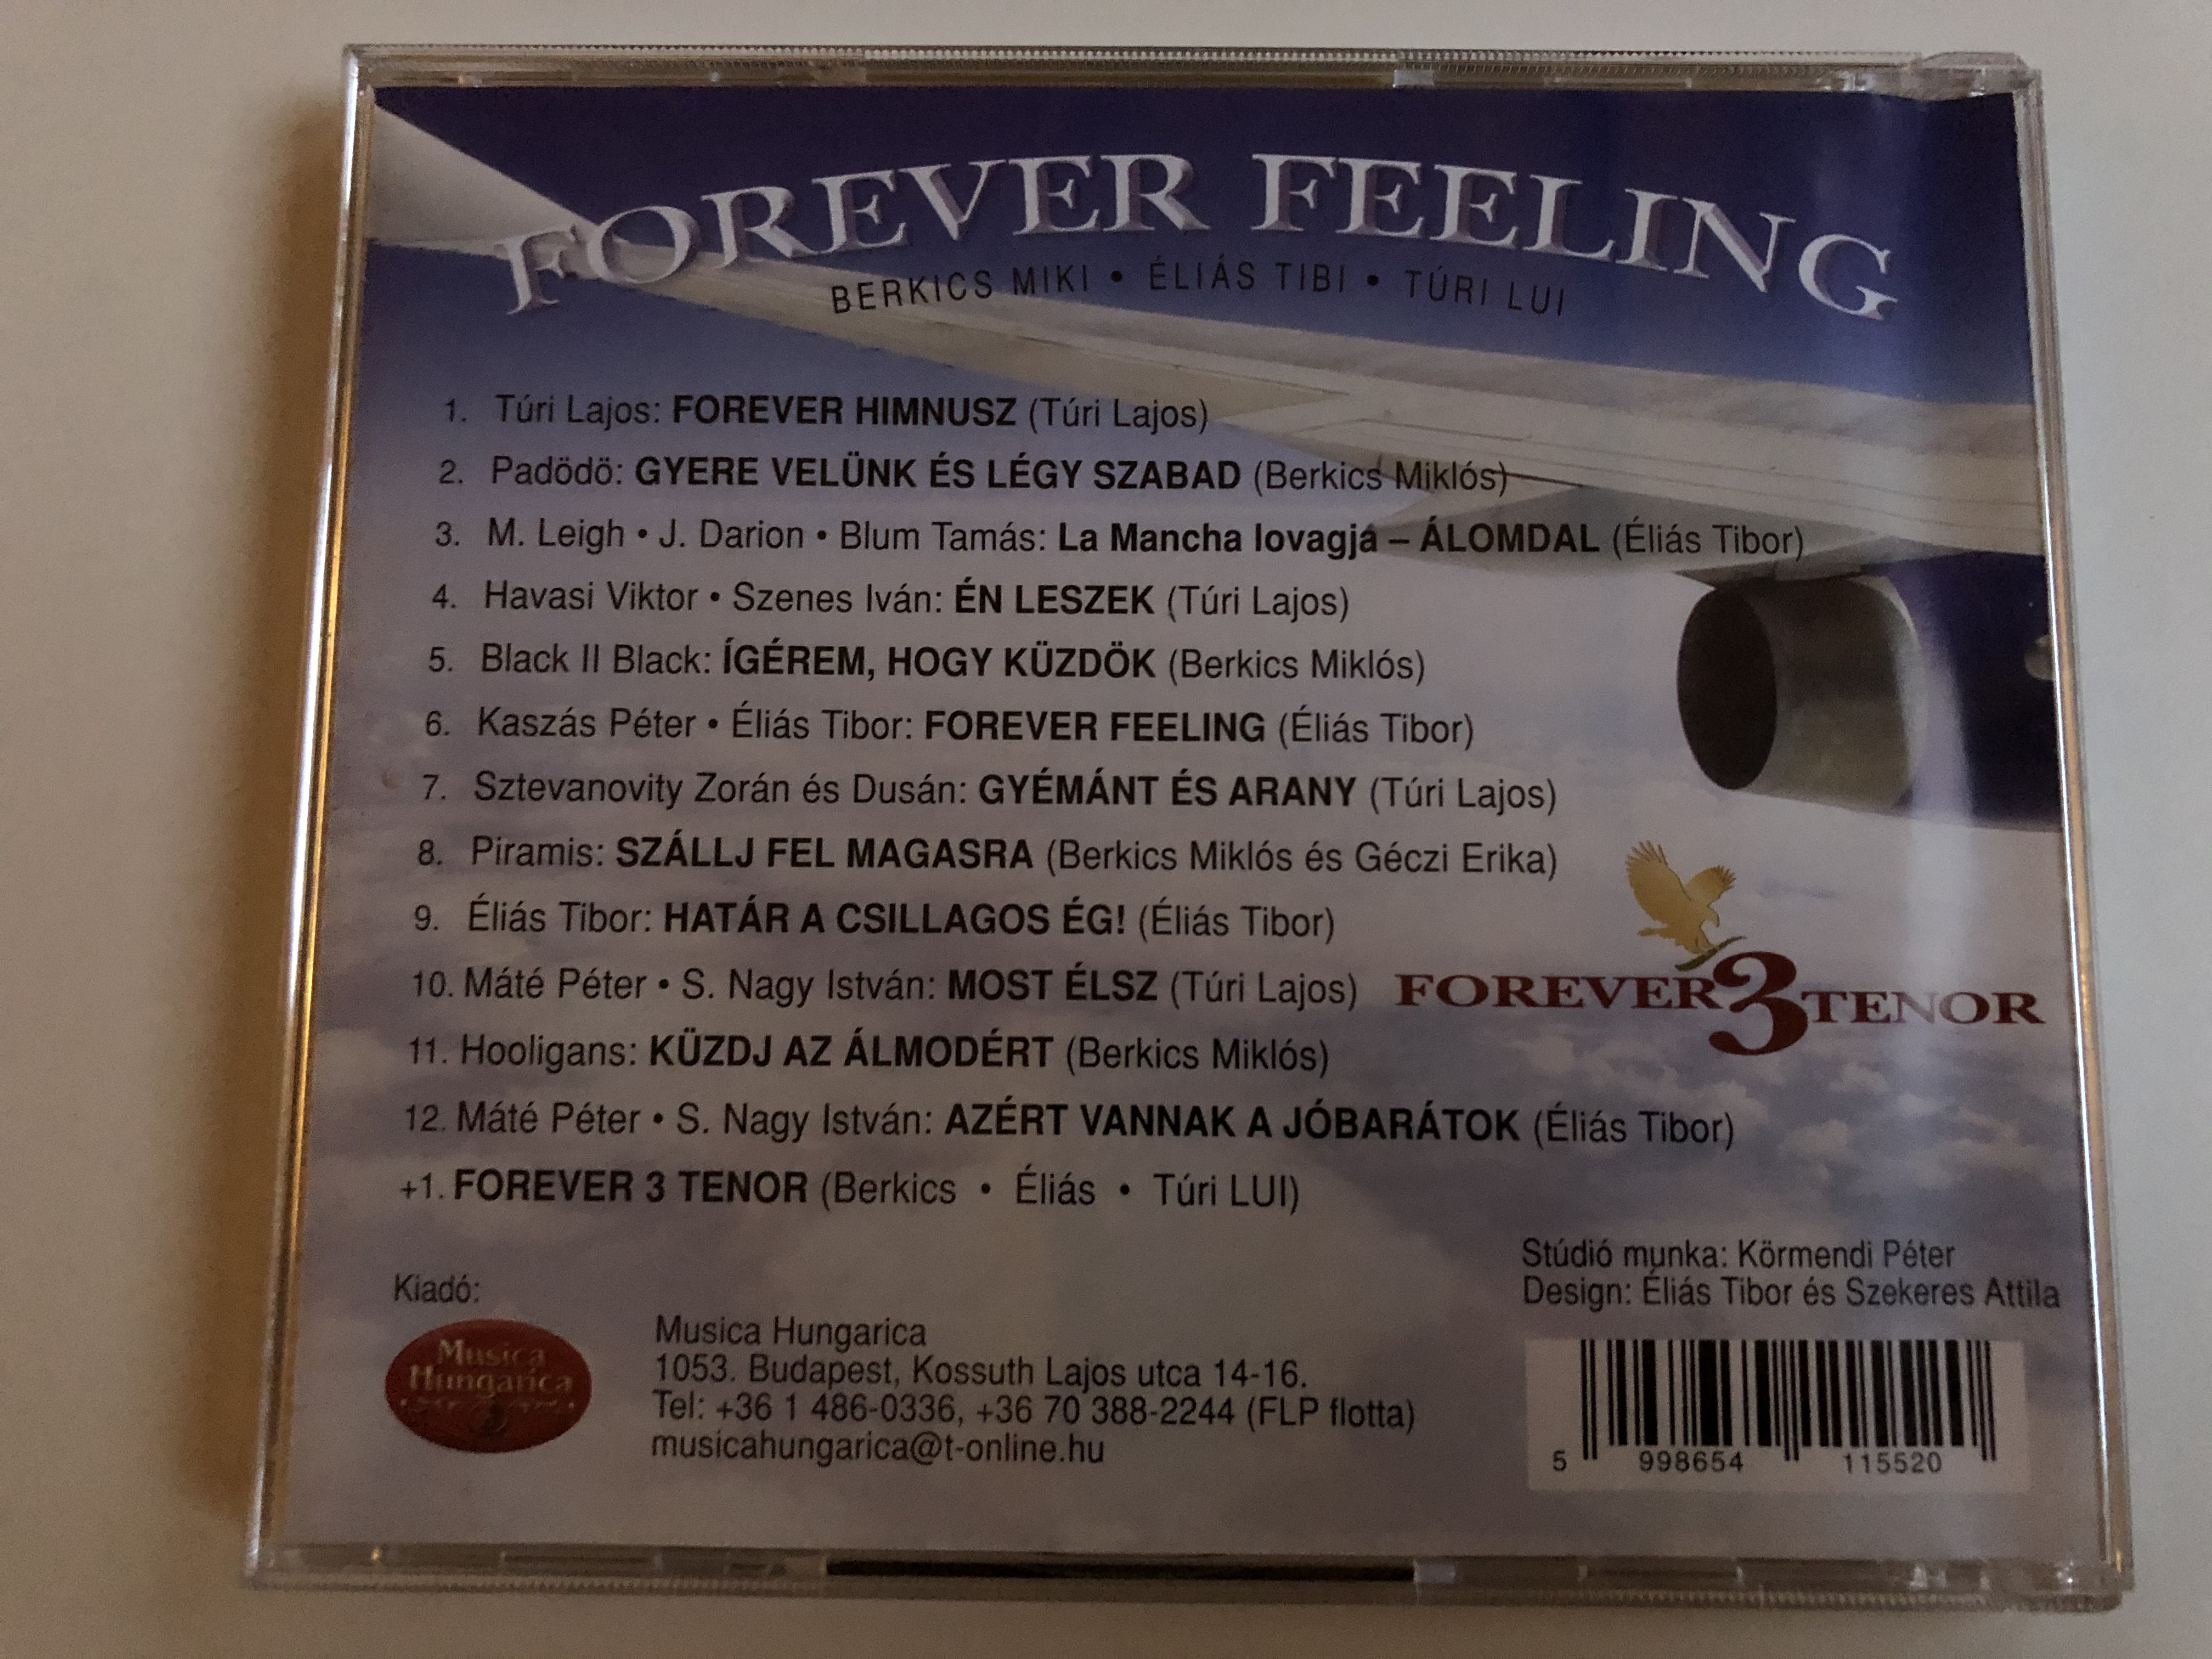 forever-feeling-forever-3-tenor-musica-hungarica-audio-cd-2011-stereo-mha-552-4-.jpg